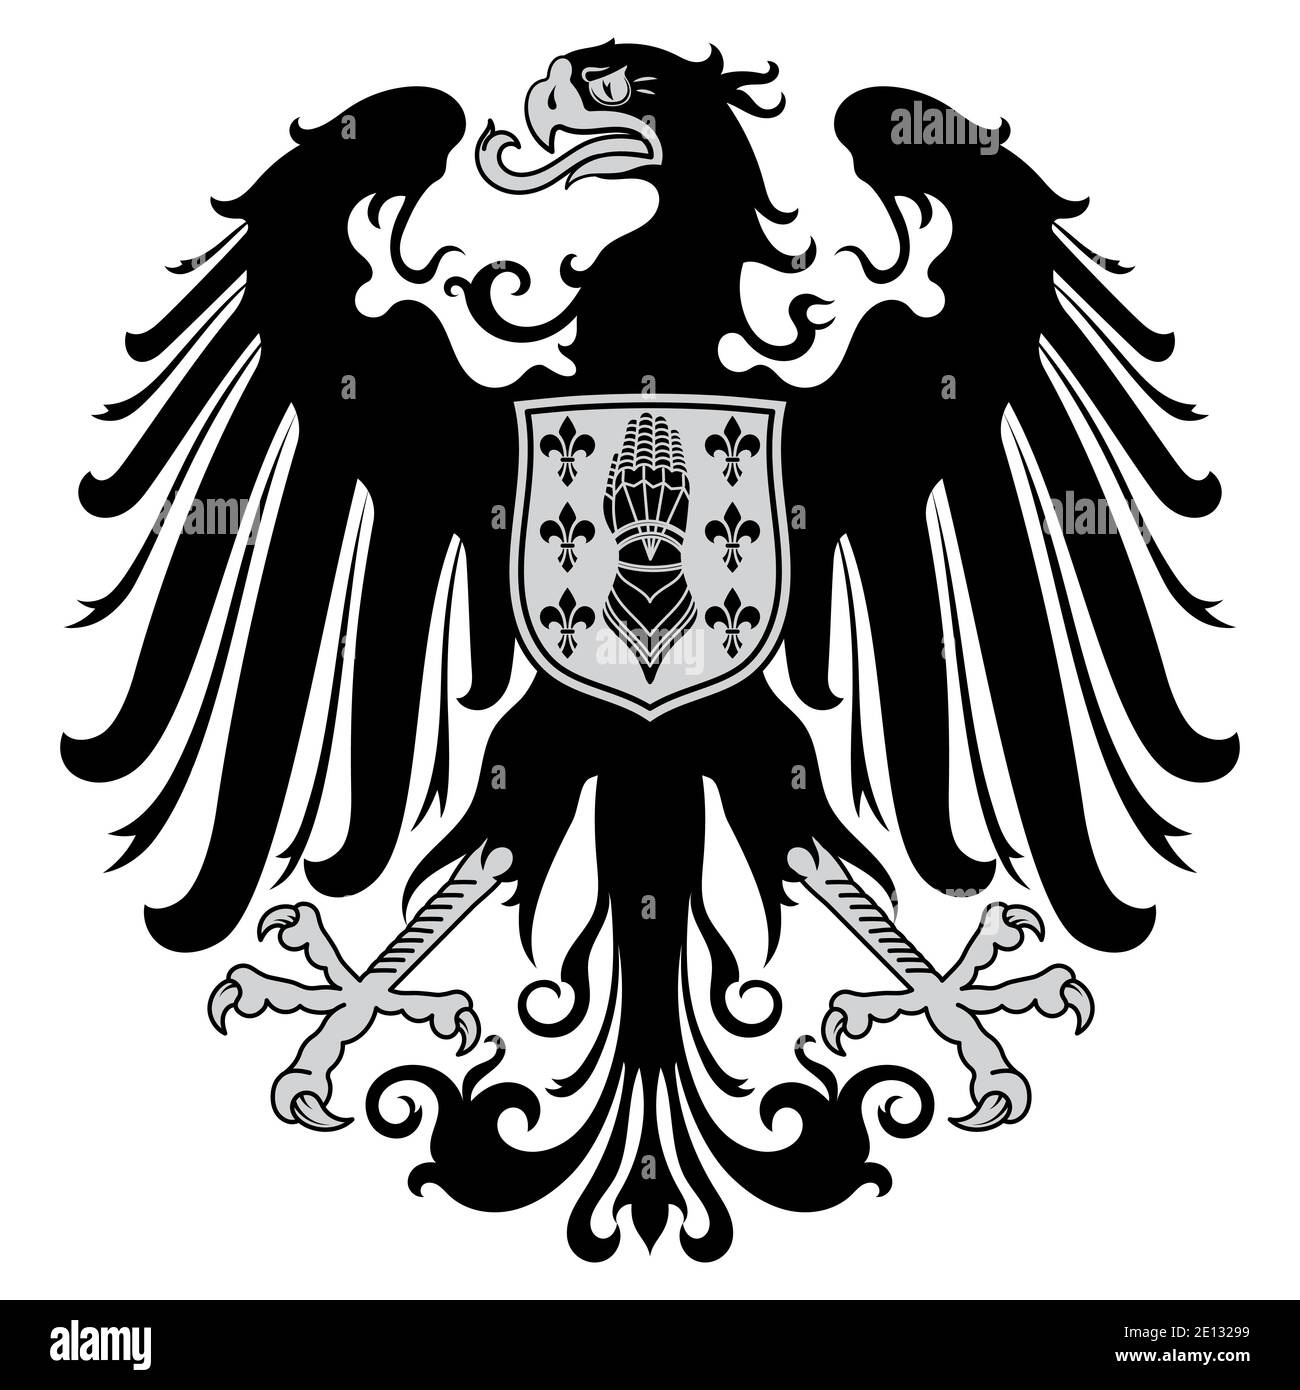 Mittelalterliches Wappentier-Design, Wappentier und Ritterschild Stock Vektor